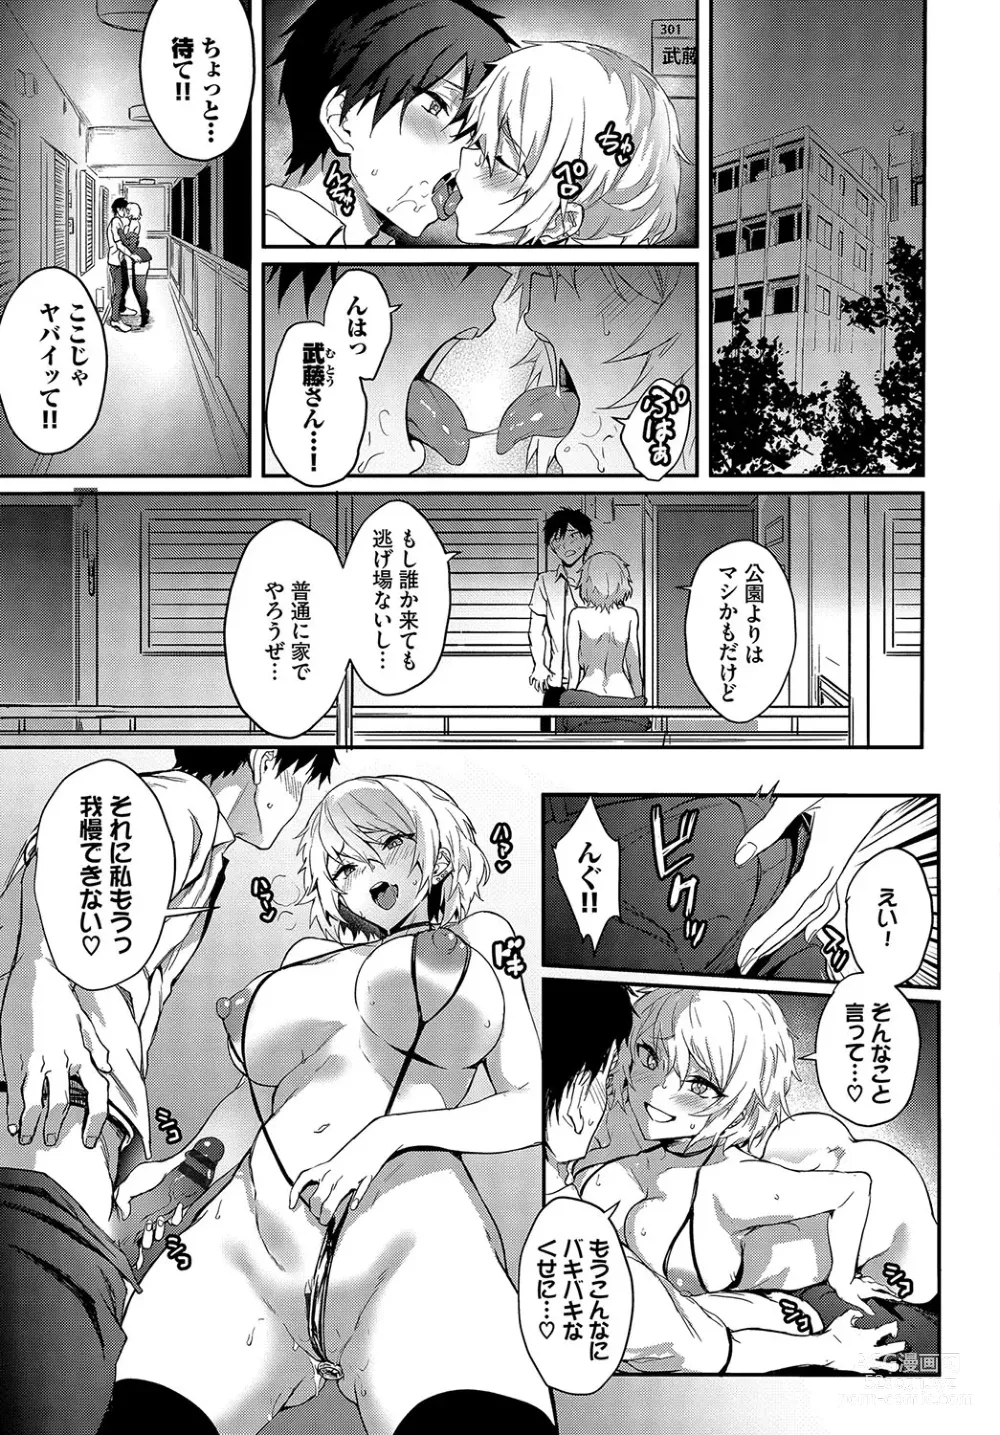 Page 200 of manga Bitch Bitch